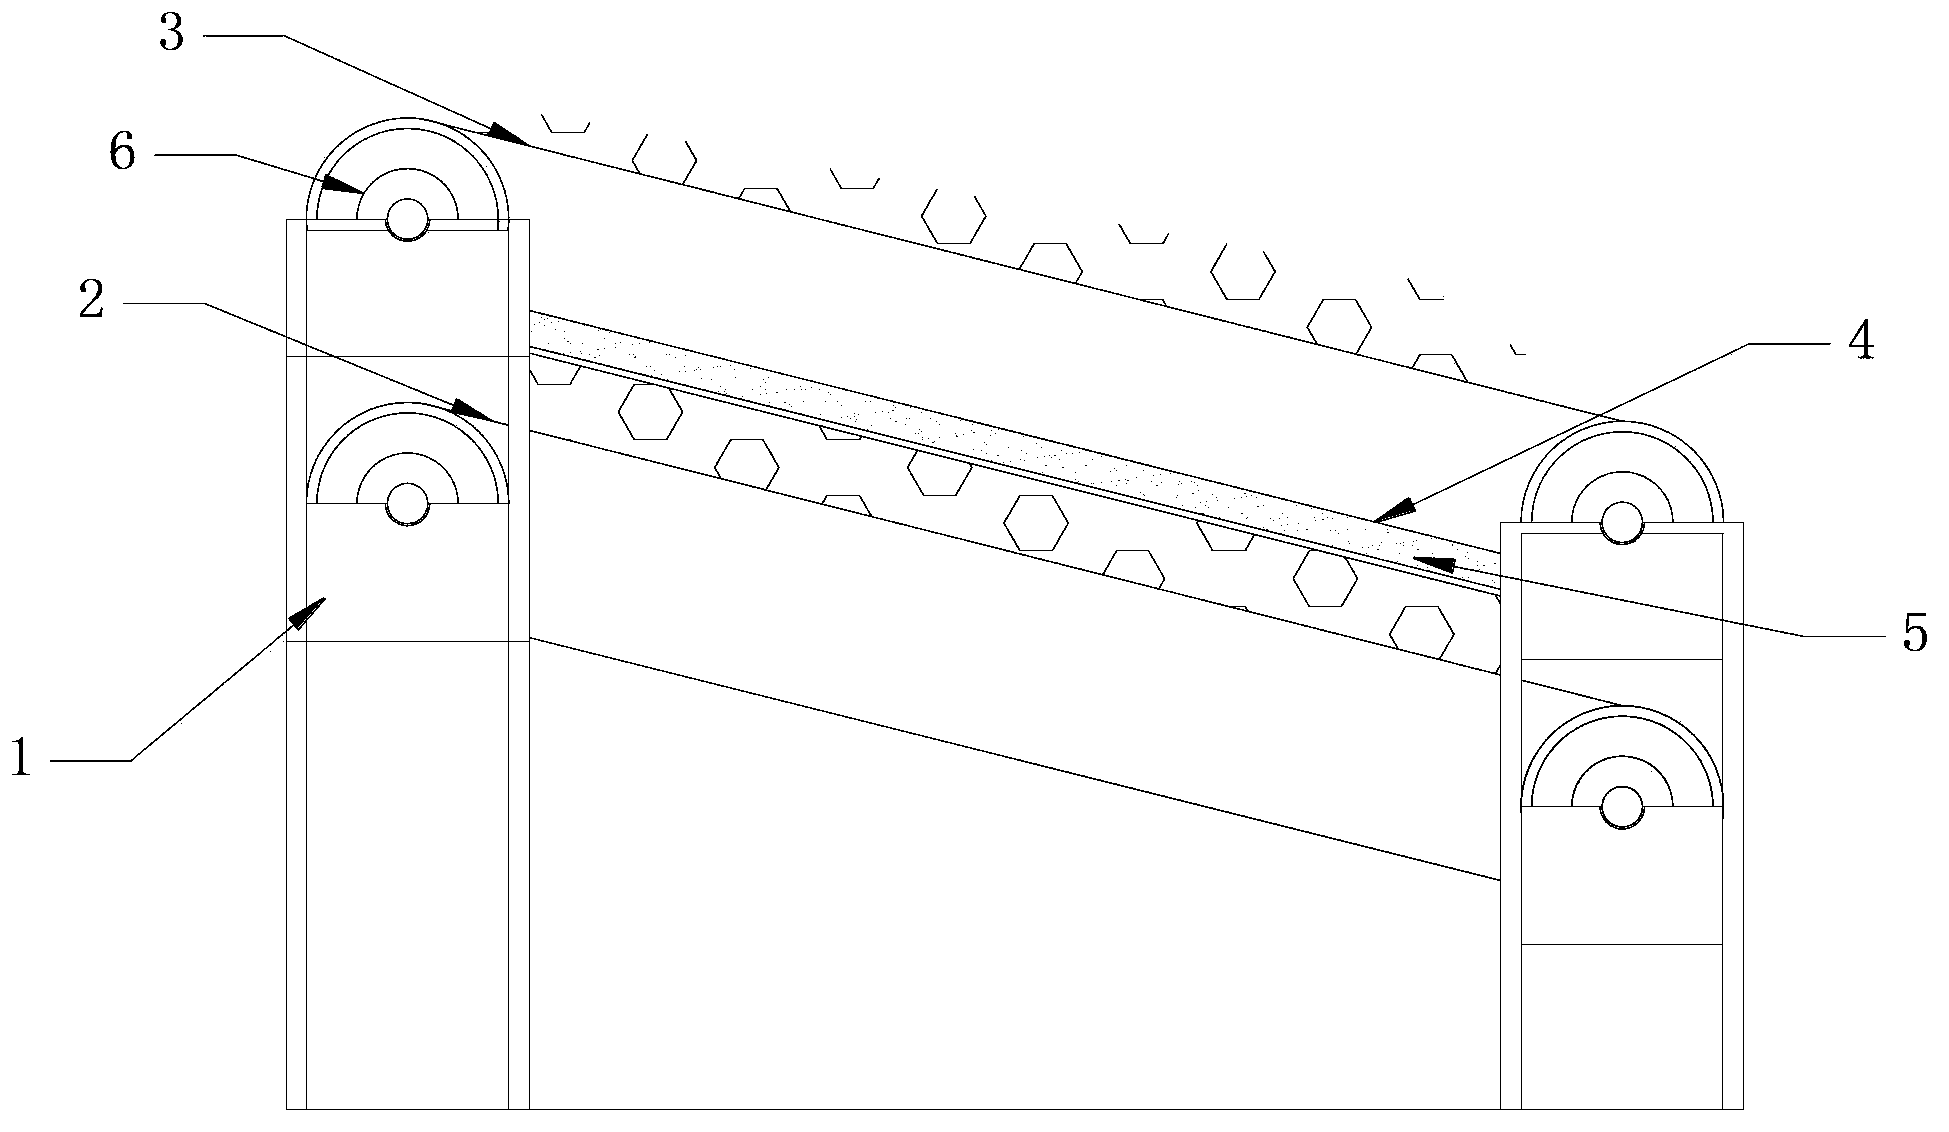 Safe de-ironing conveyor belt